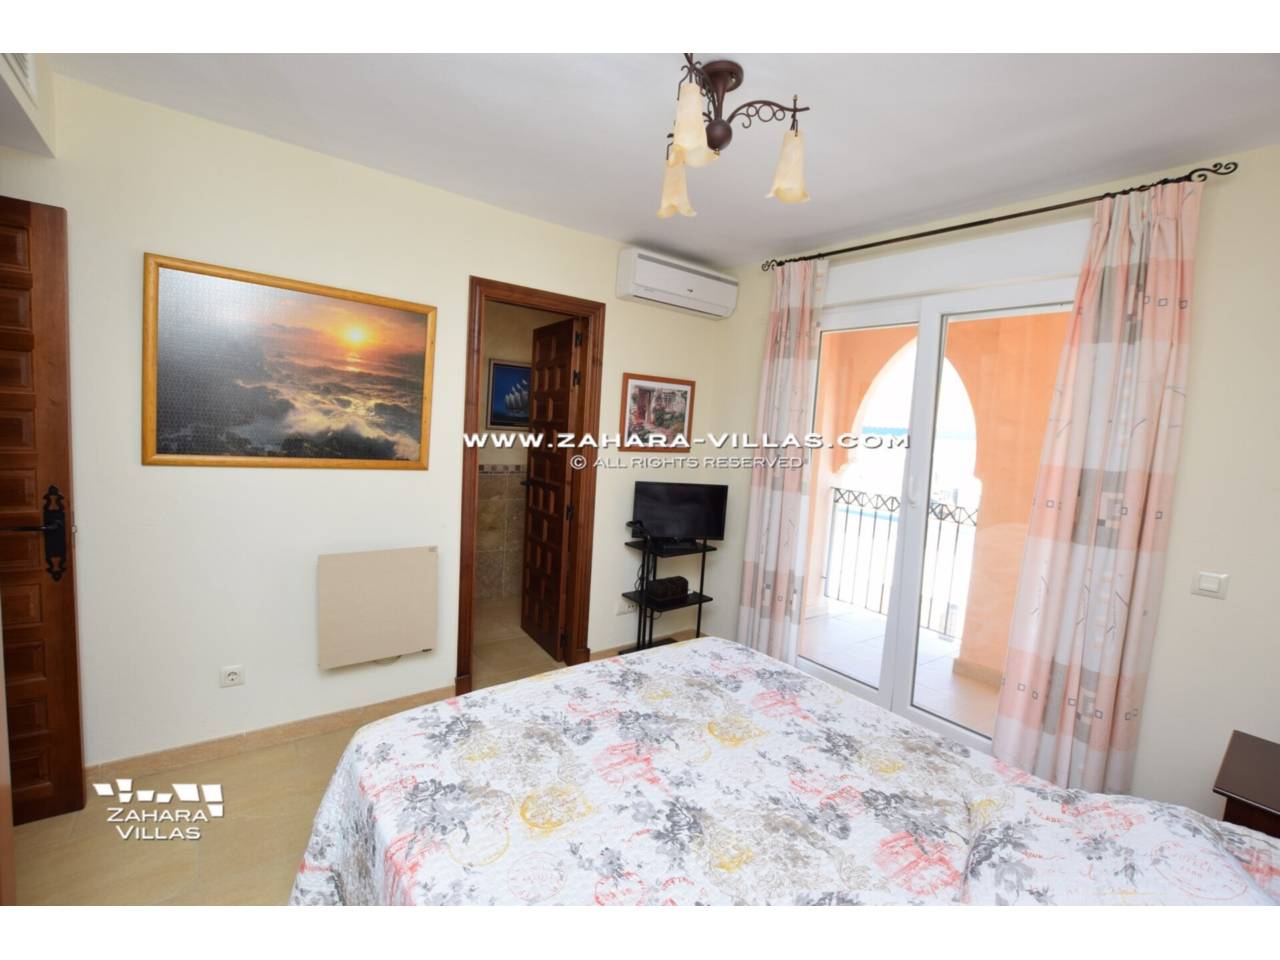 Imagen 21 de Semi-detached house for sale in Zahara de los Atunes, Costa de la Luz